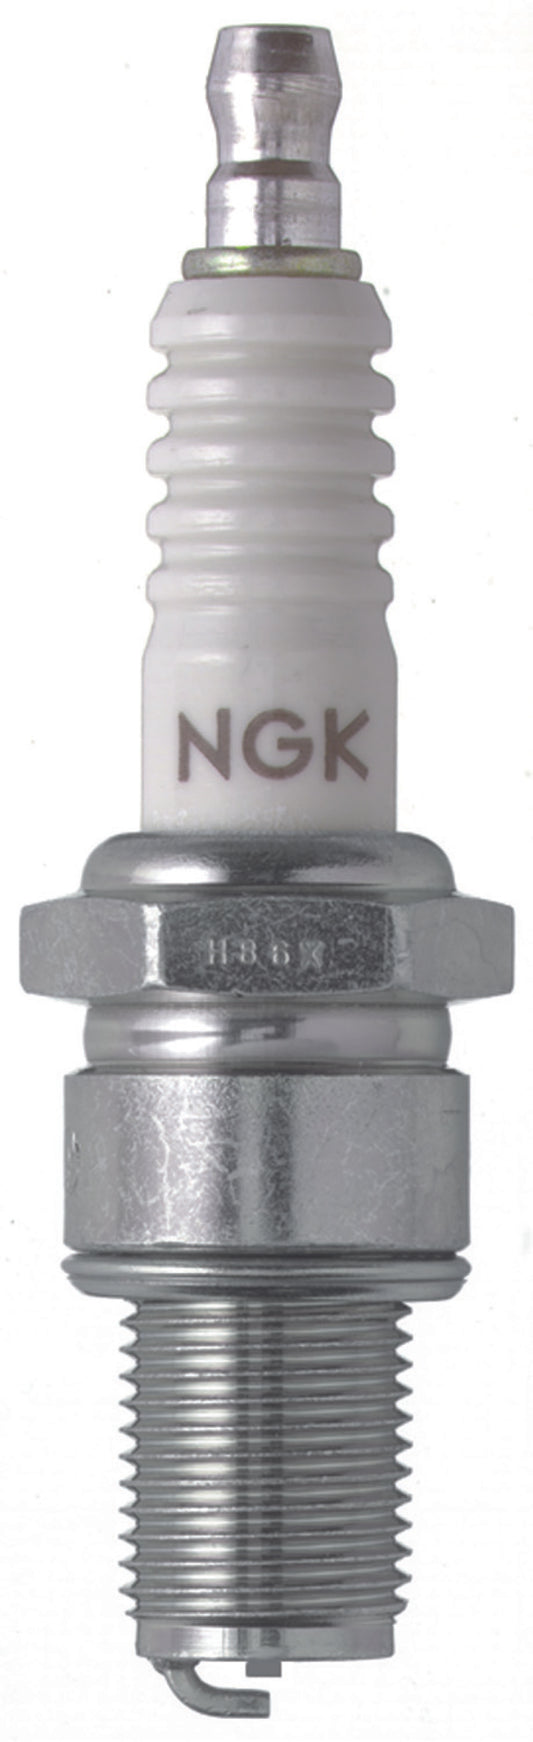 NGK Racing Spark Plug Box of 4 (B9EG)